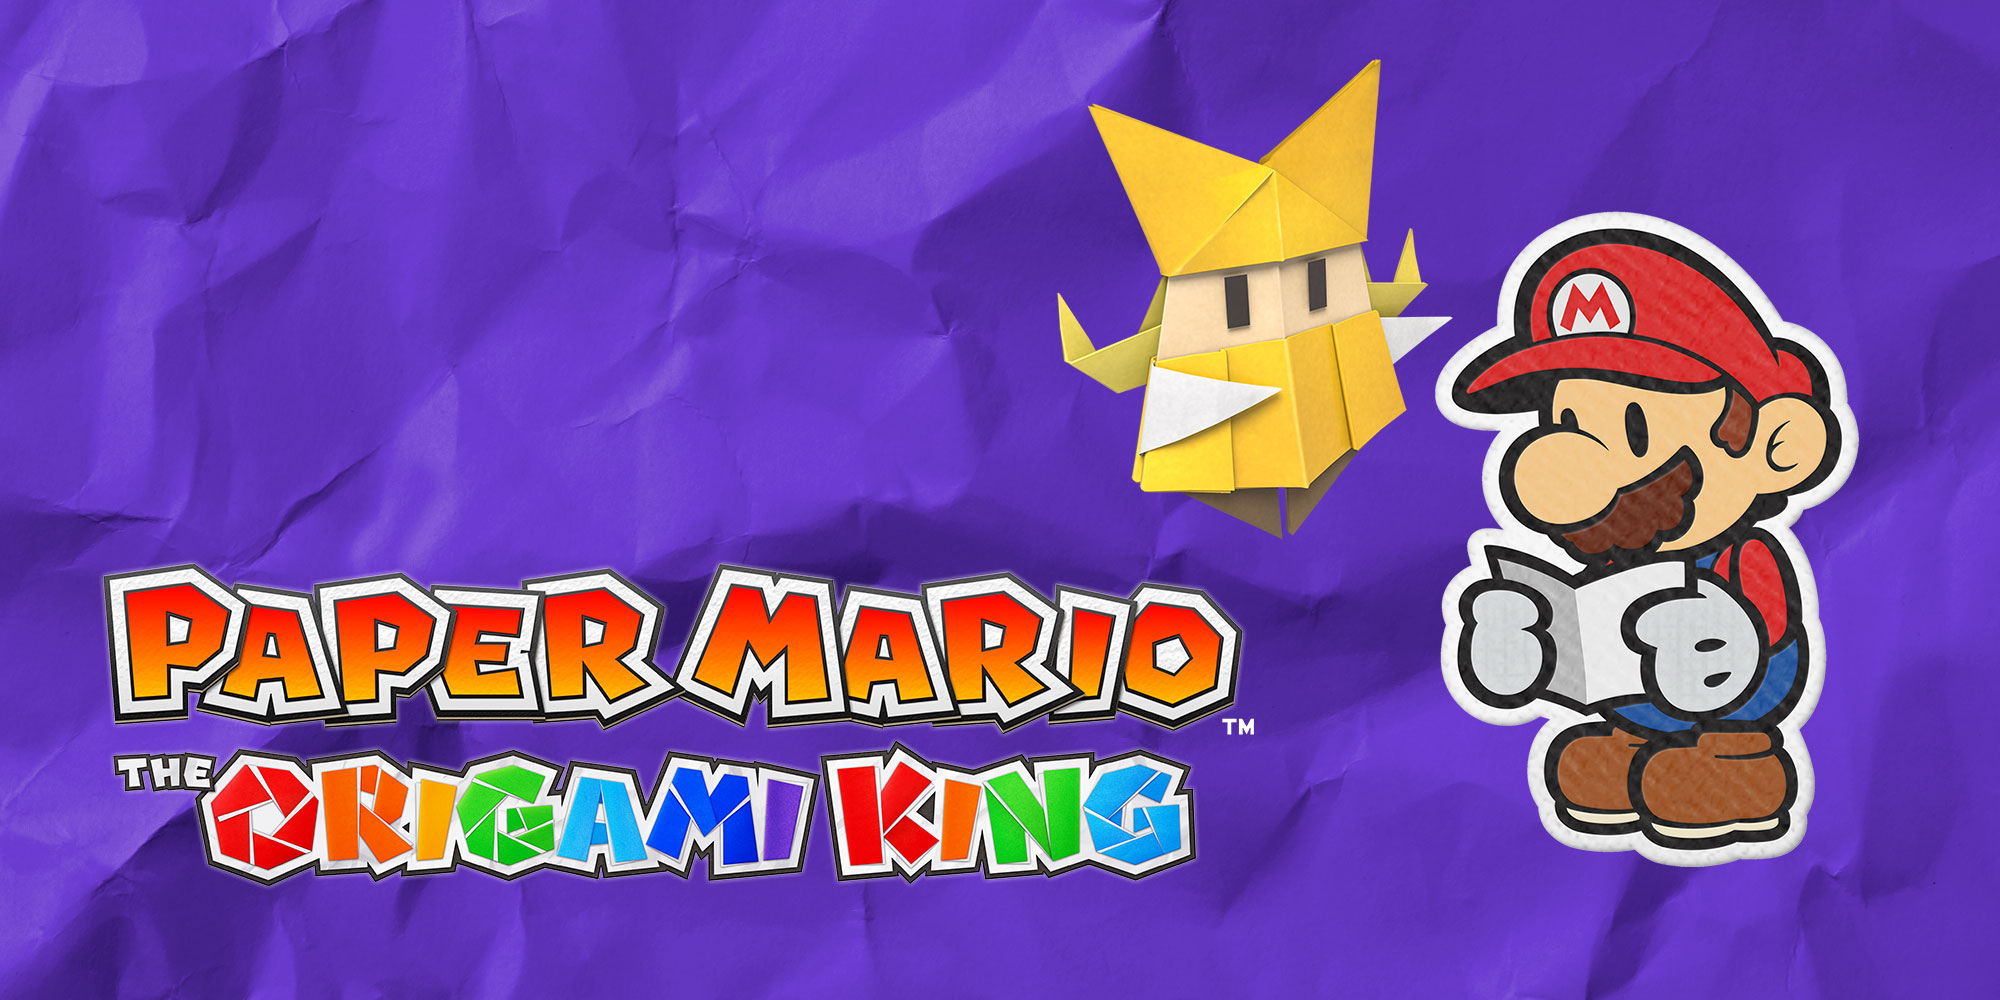 Mit diesen 10 Tipps für Paper Mario: The Origami King seid ihr bereit fürs Abenteuer!